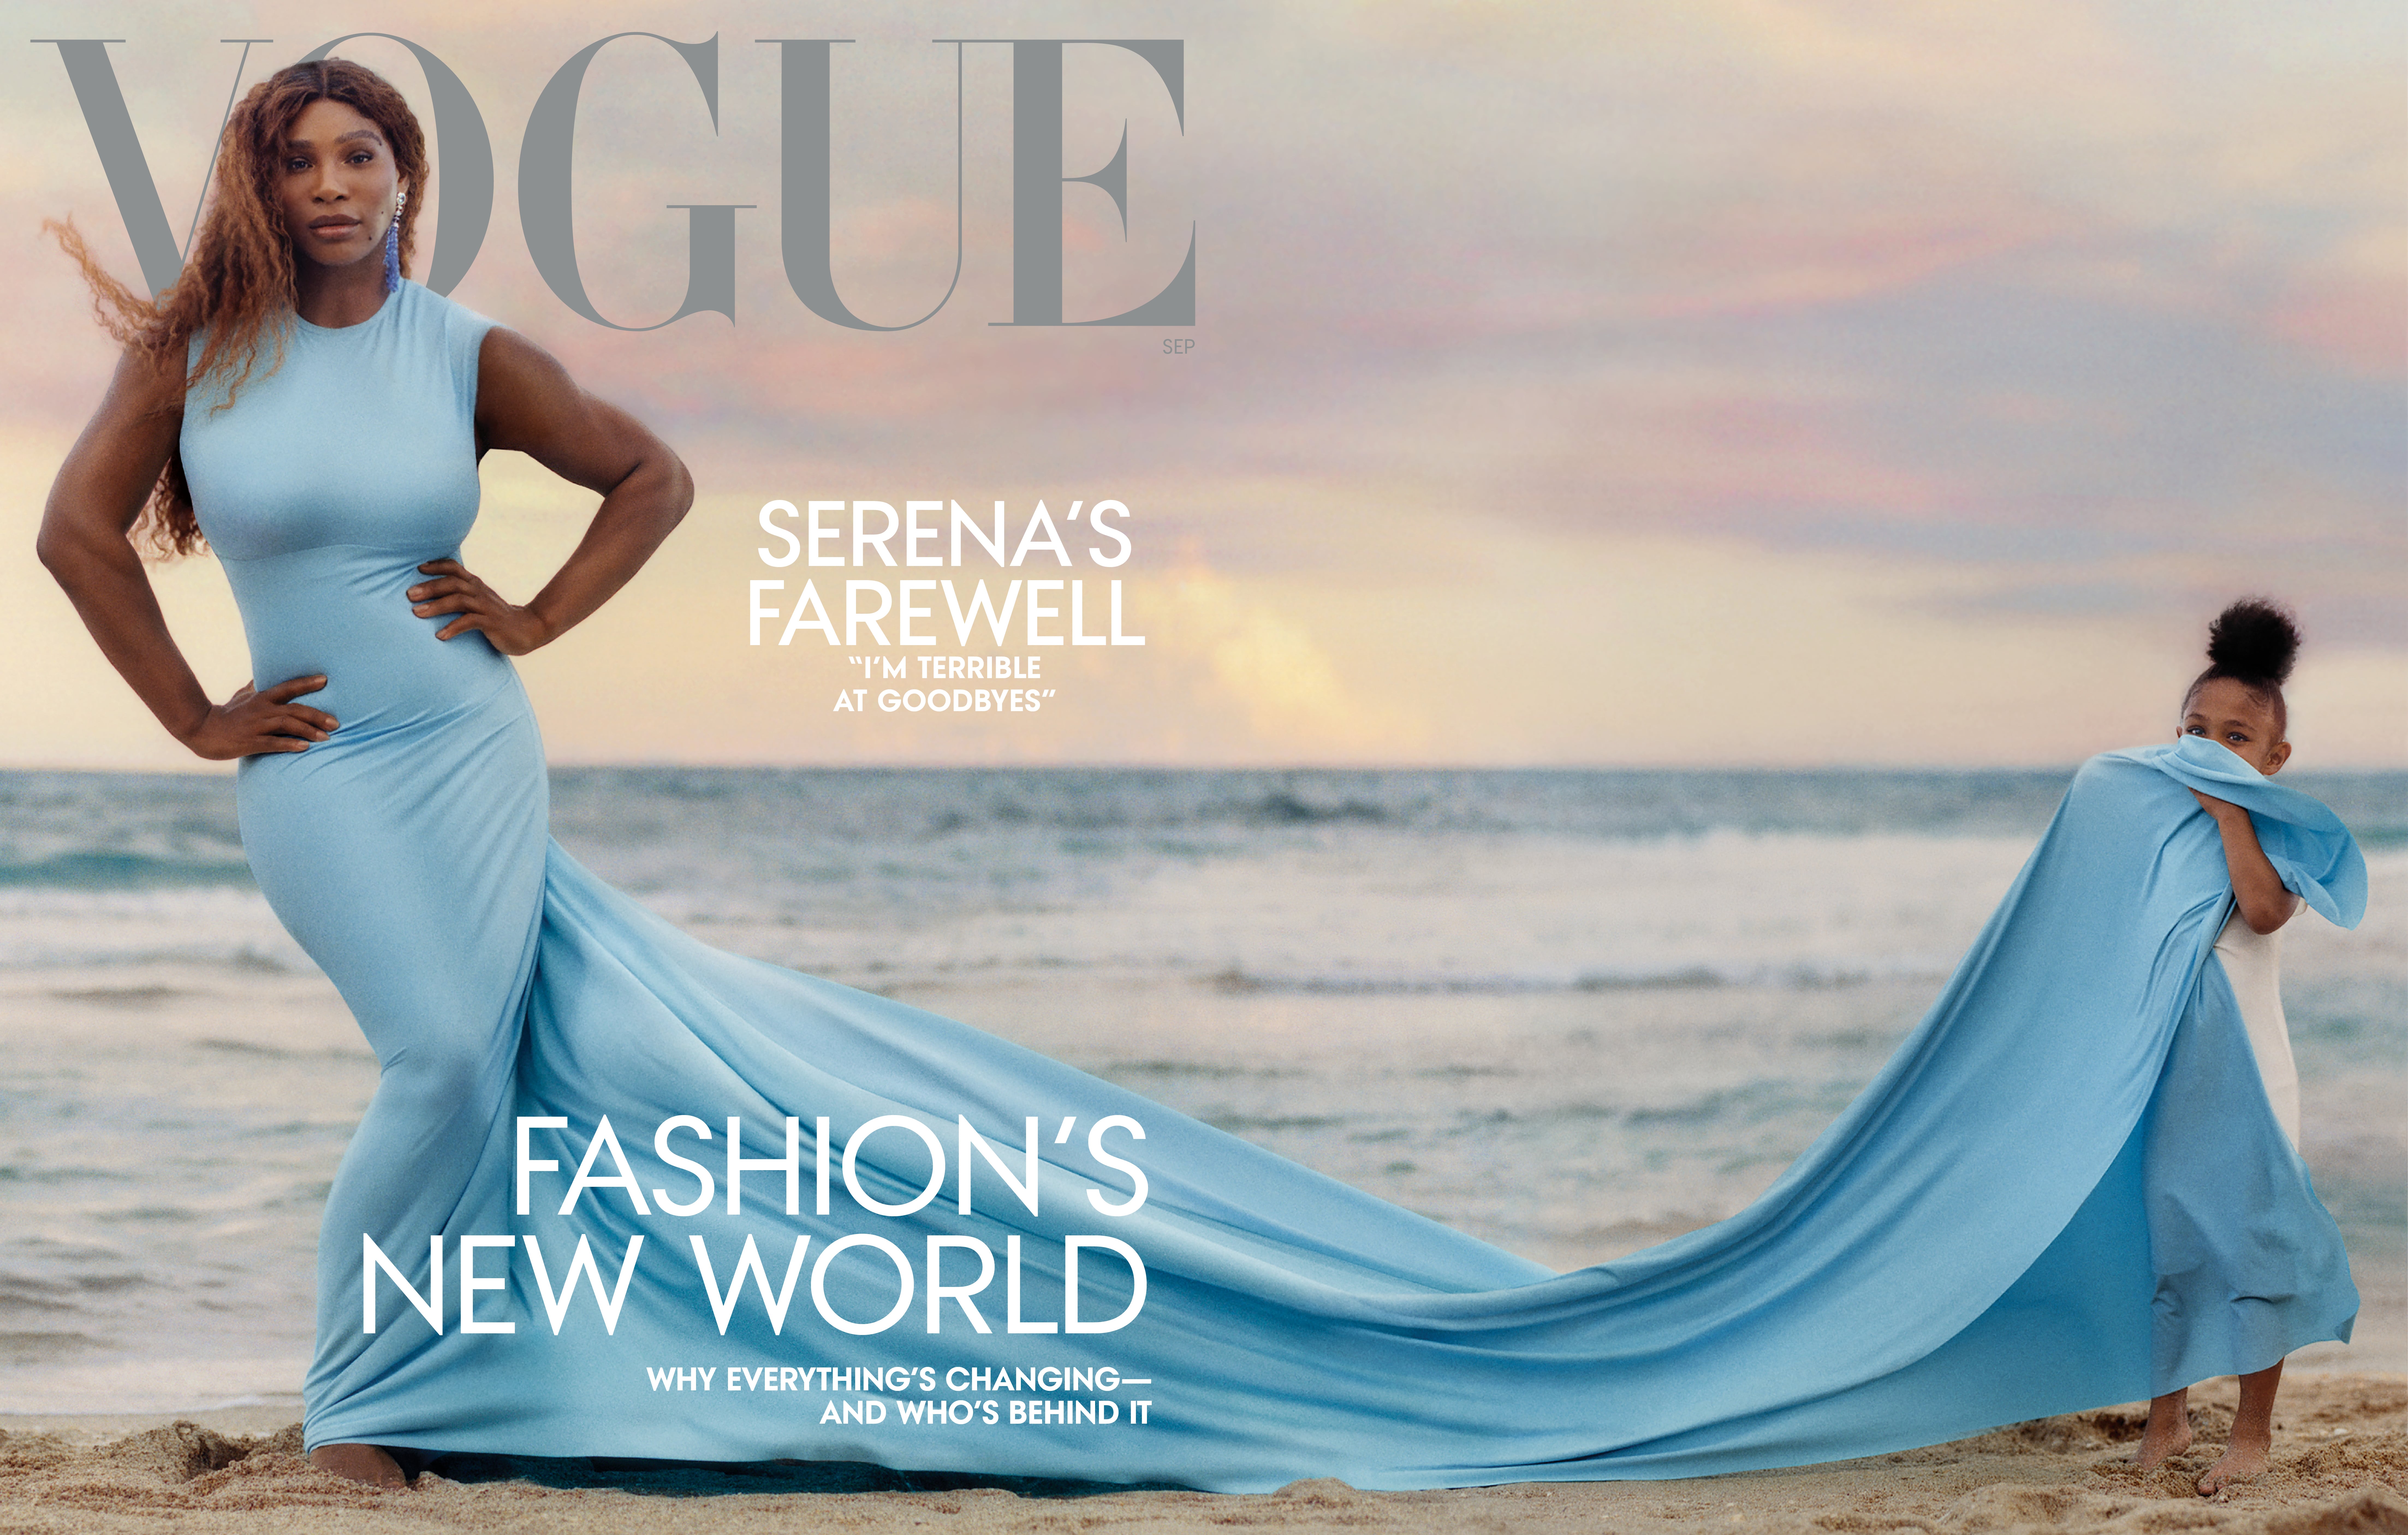 Serena Williams and US Vogue's cliche-free cover, Fashion